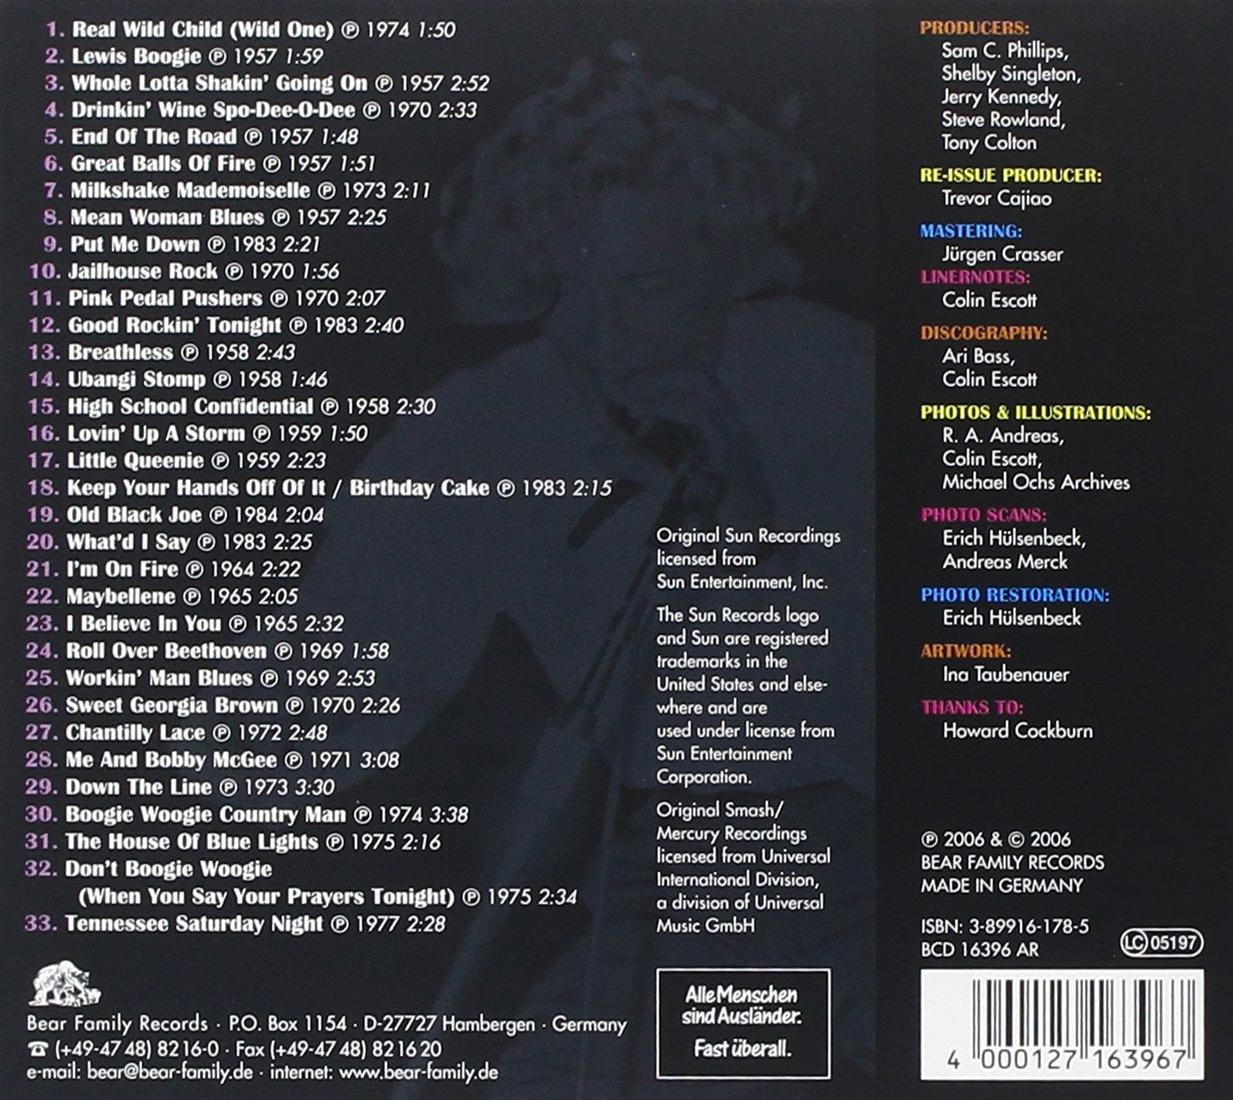 Jerry Lee (CD) Lewis Rocks - 